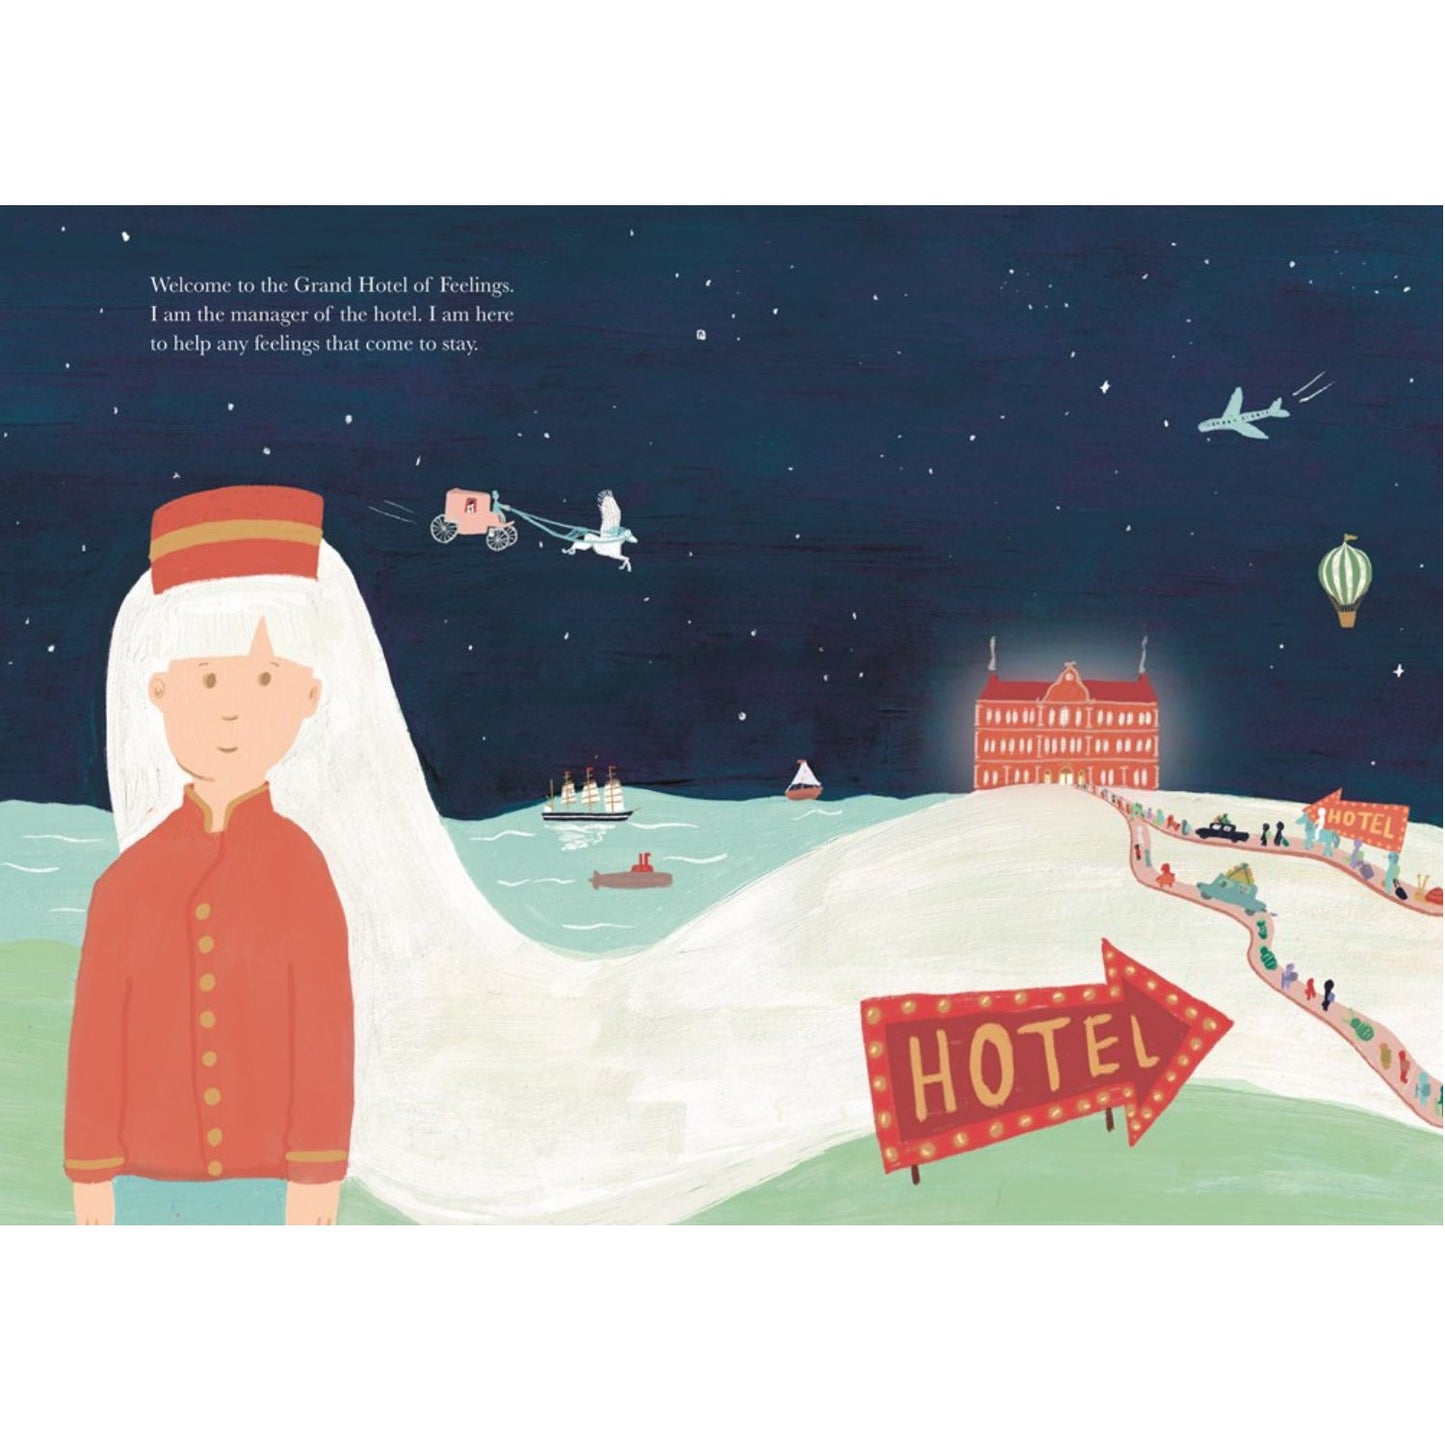 The Grand Hotel of Feelings | Hardcover | Children's Book on Feelings